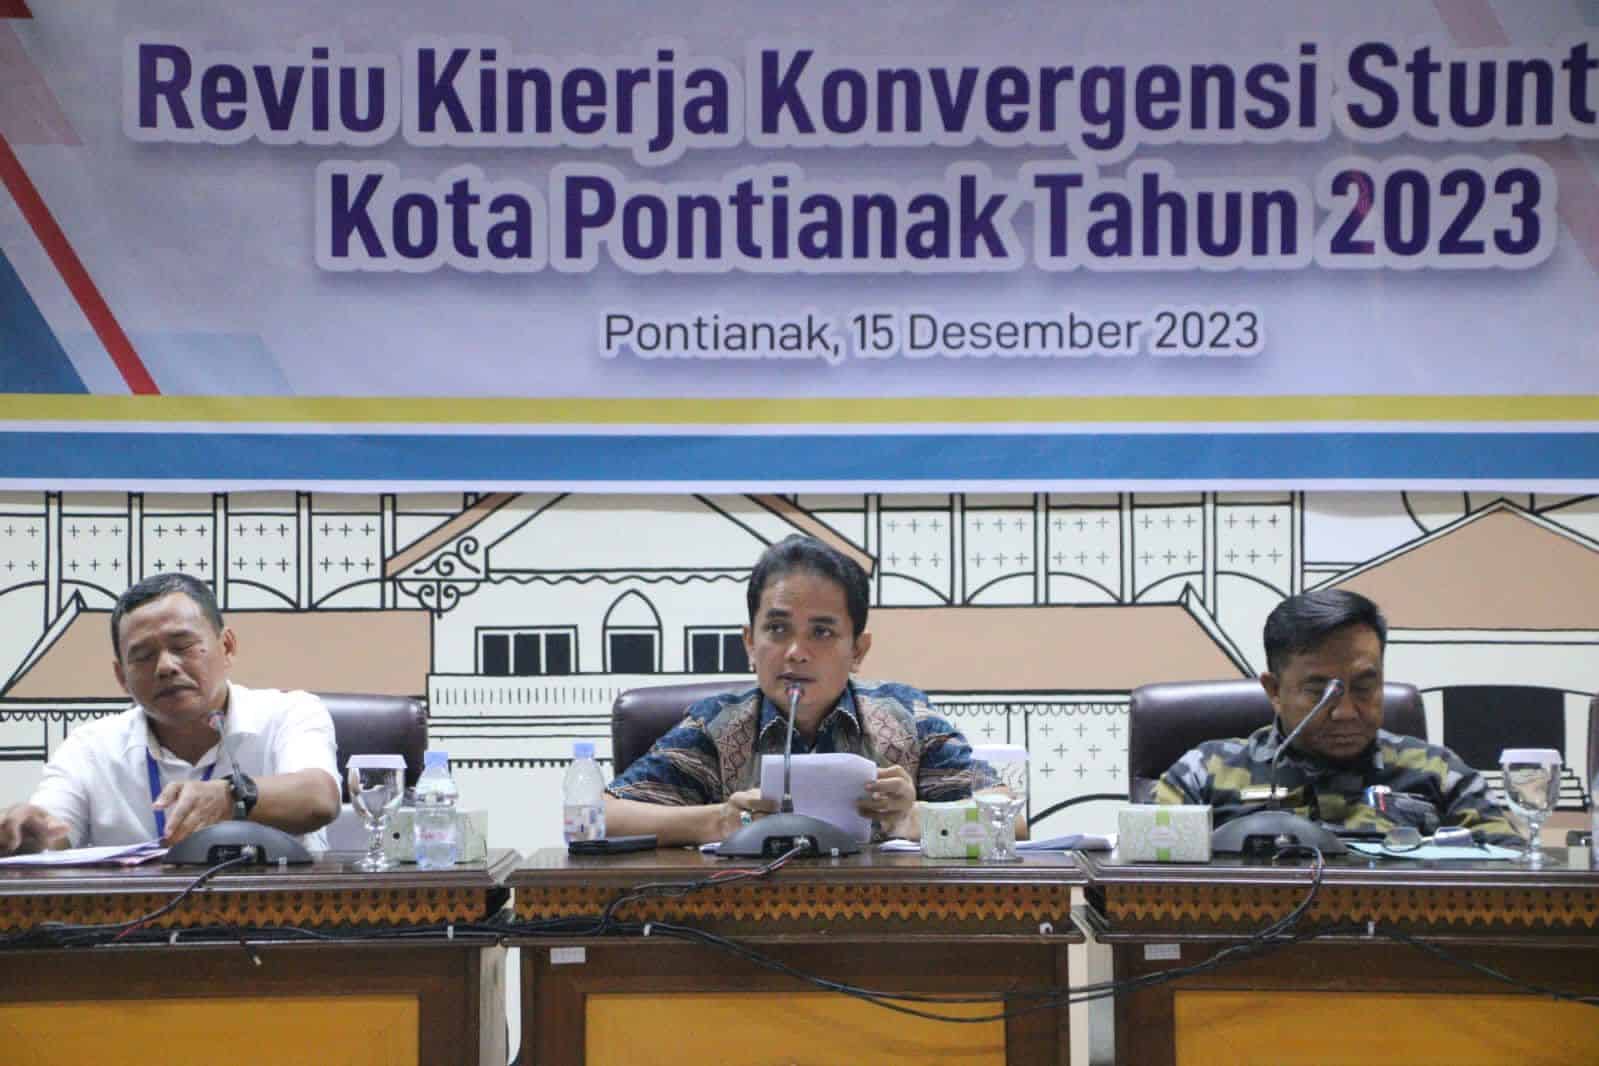 Review kinerja konvergensi stunting Kota Pontianak tahun 2023. (Foto: Prokopim pontianak)